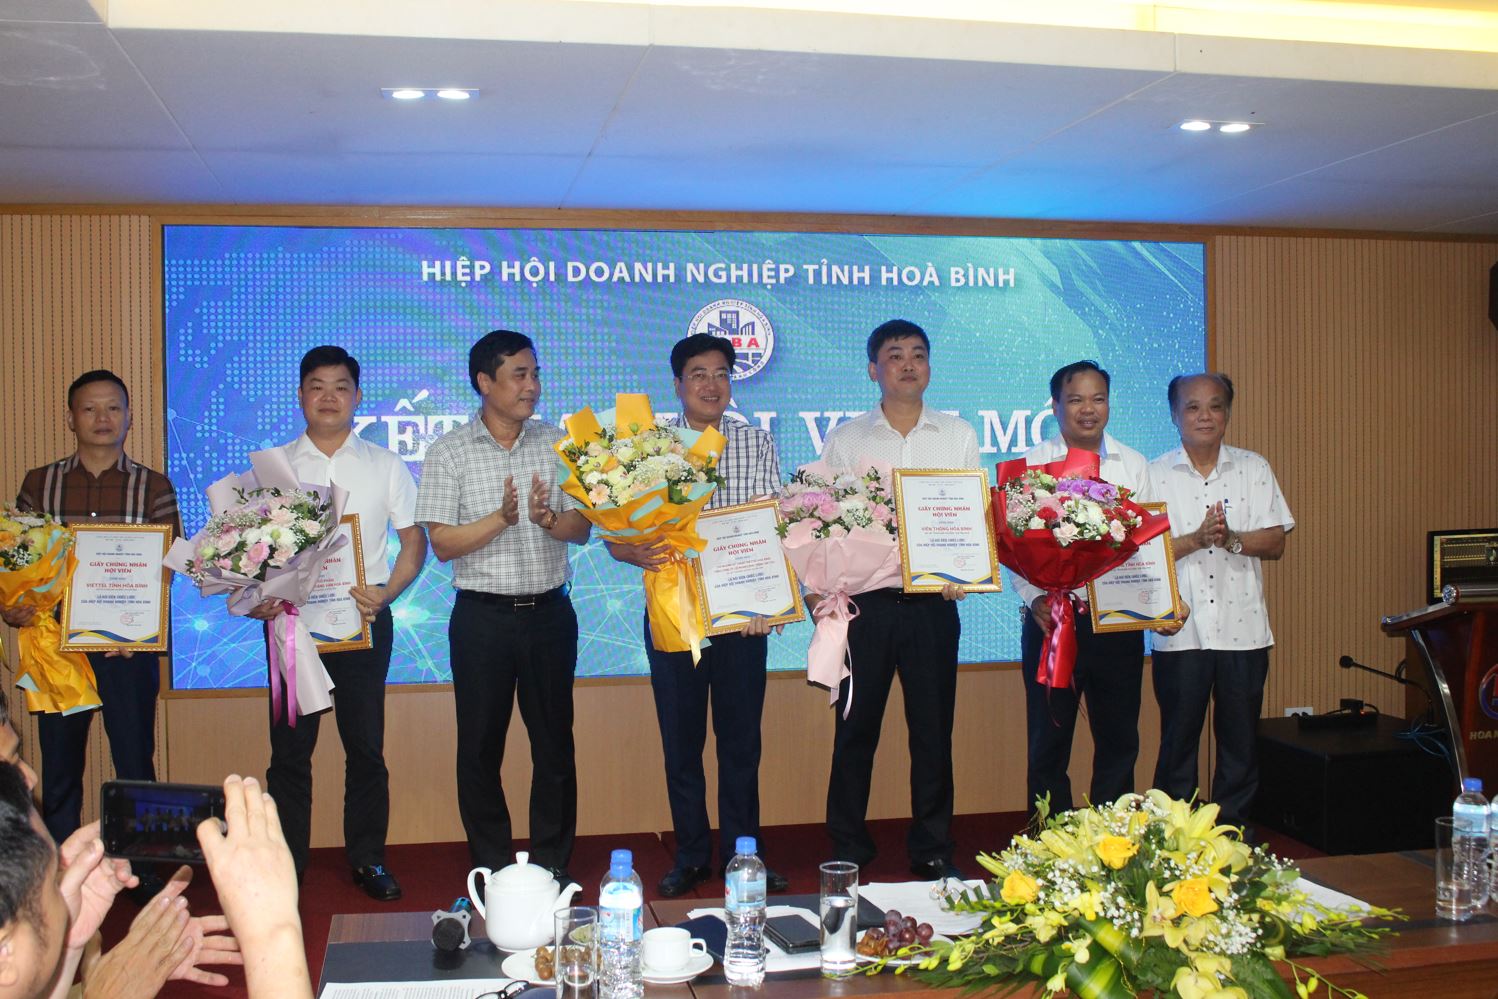 Lãnh đạo HHDN tỉnh Hòa Bình trao Quyết định công nhận 8 hội viên mới